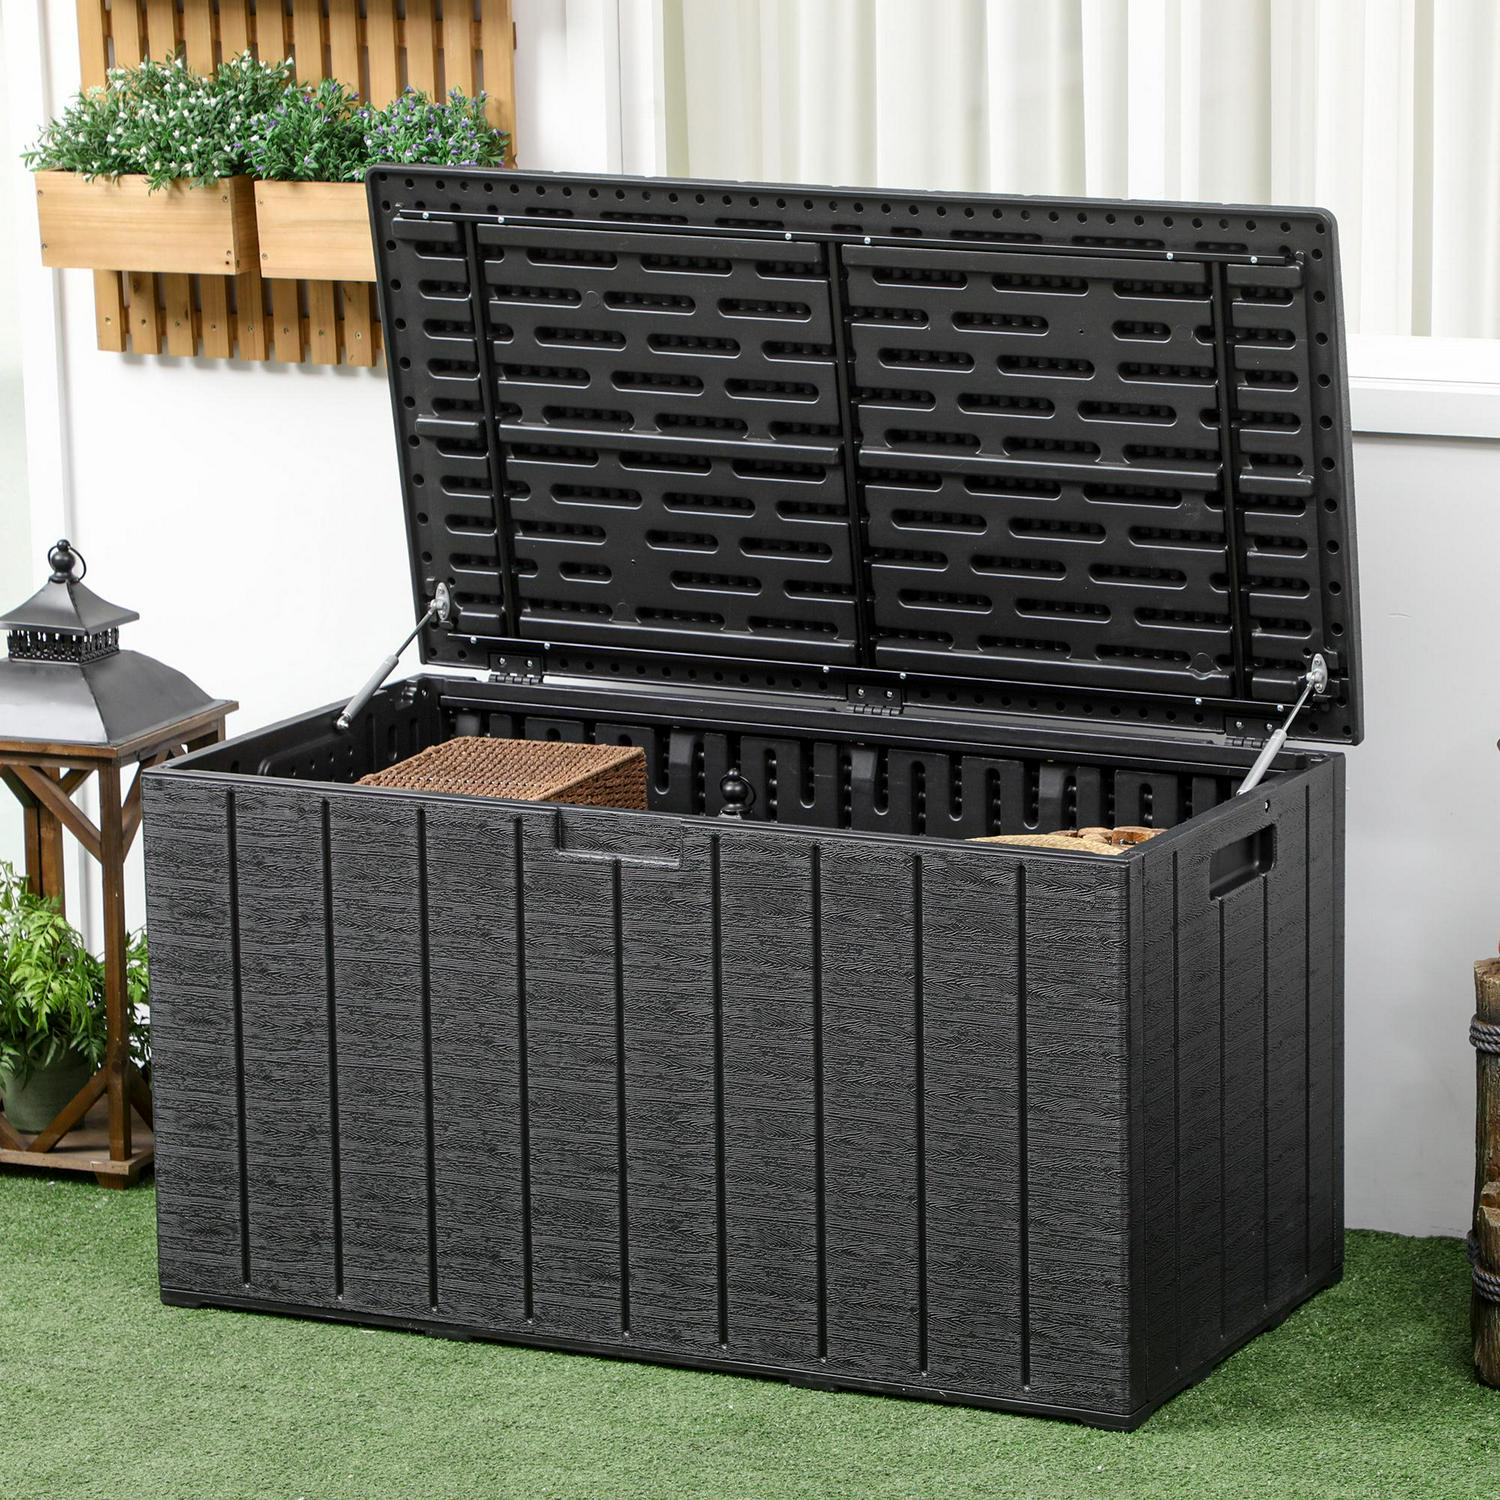 Outsunny 336L Plastic Outdoor Garden Storage Box - Black